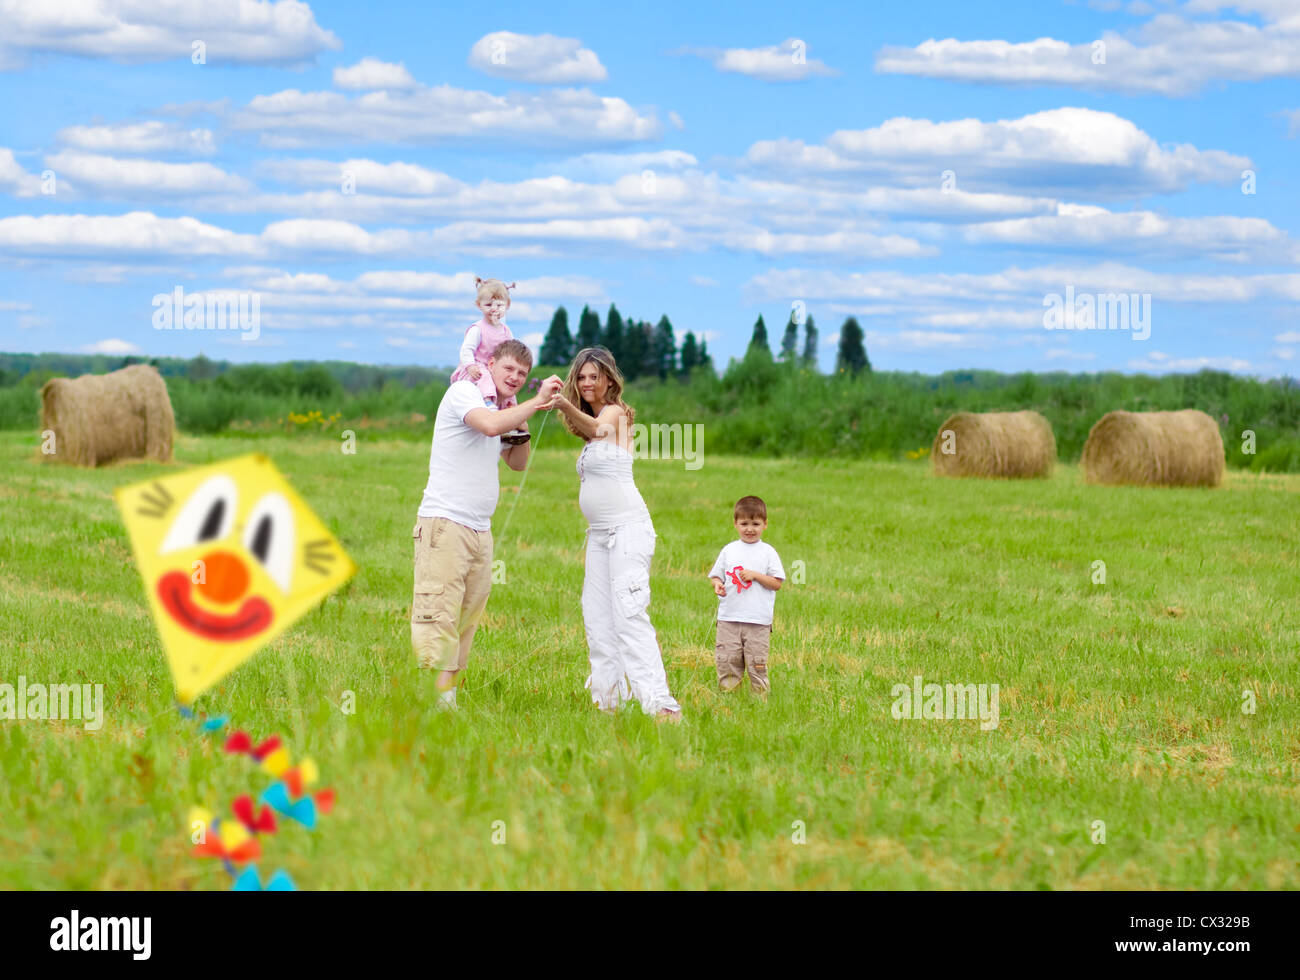 Famille heureuse avec femme enceinte en vol d'un cerf-volant en champ d'été ensemble Banque D'Images